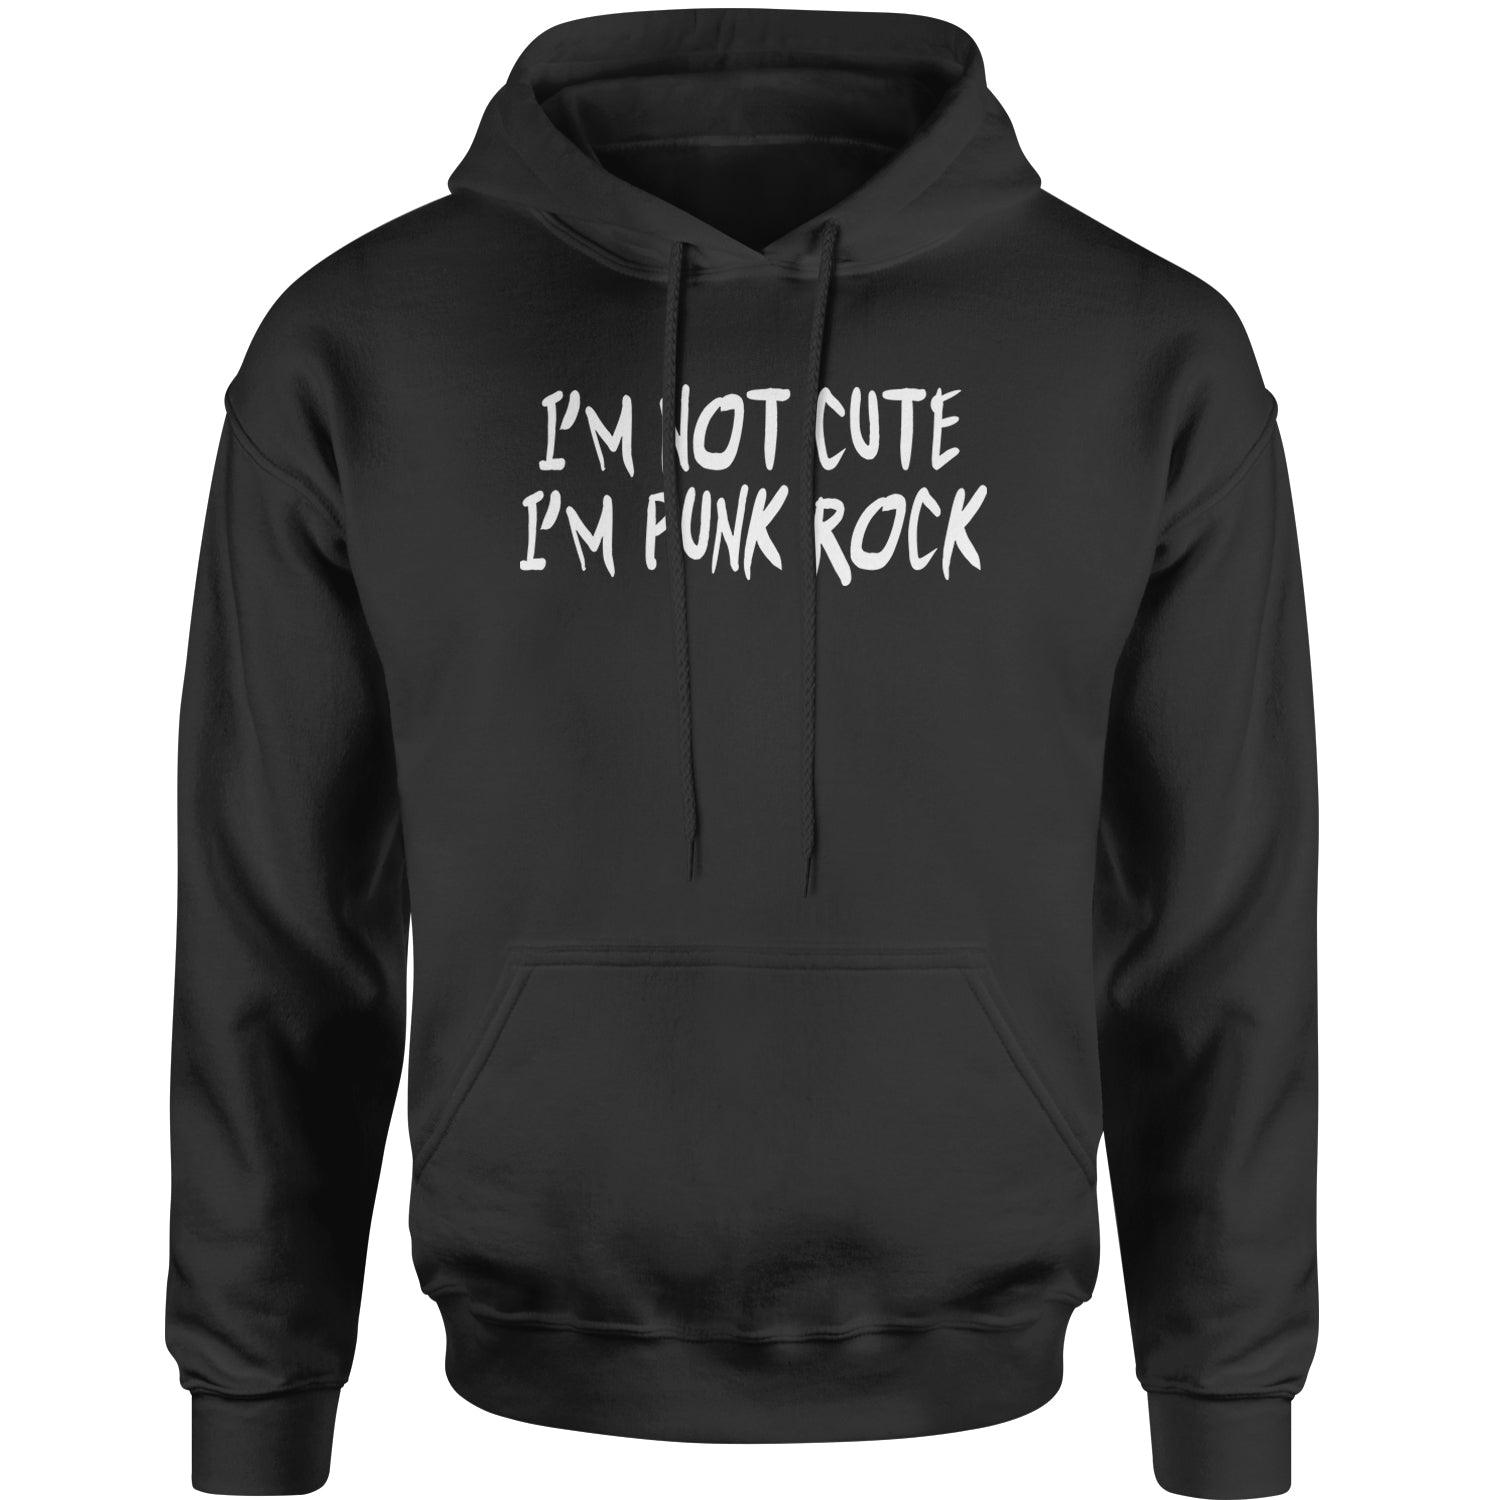 I'm Not Cute, I'm Punk Rock Adult Hoodie Sweatshirt